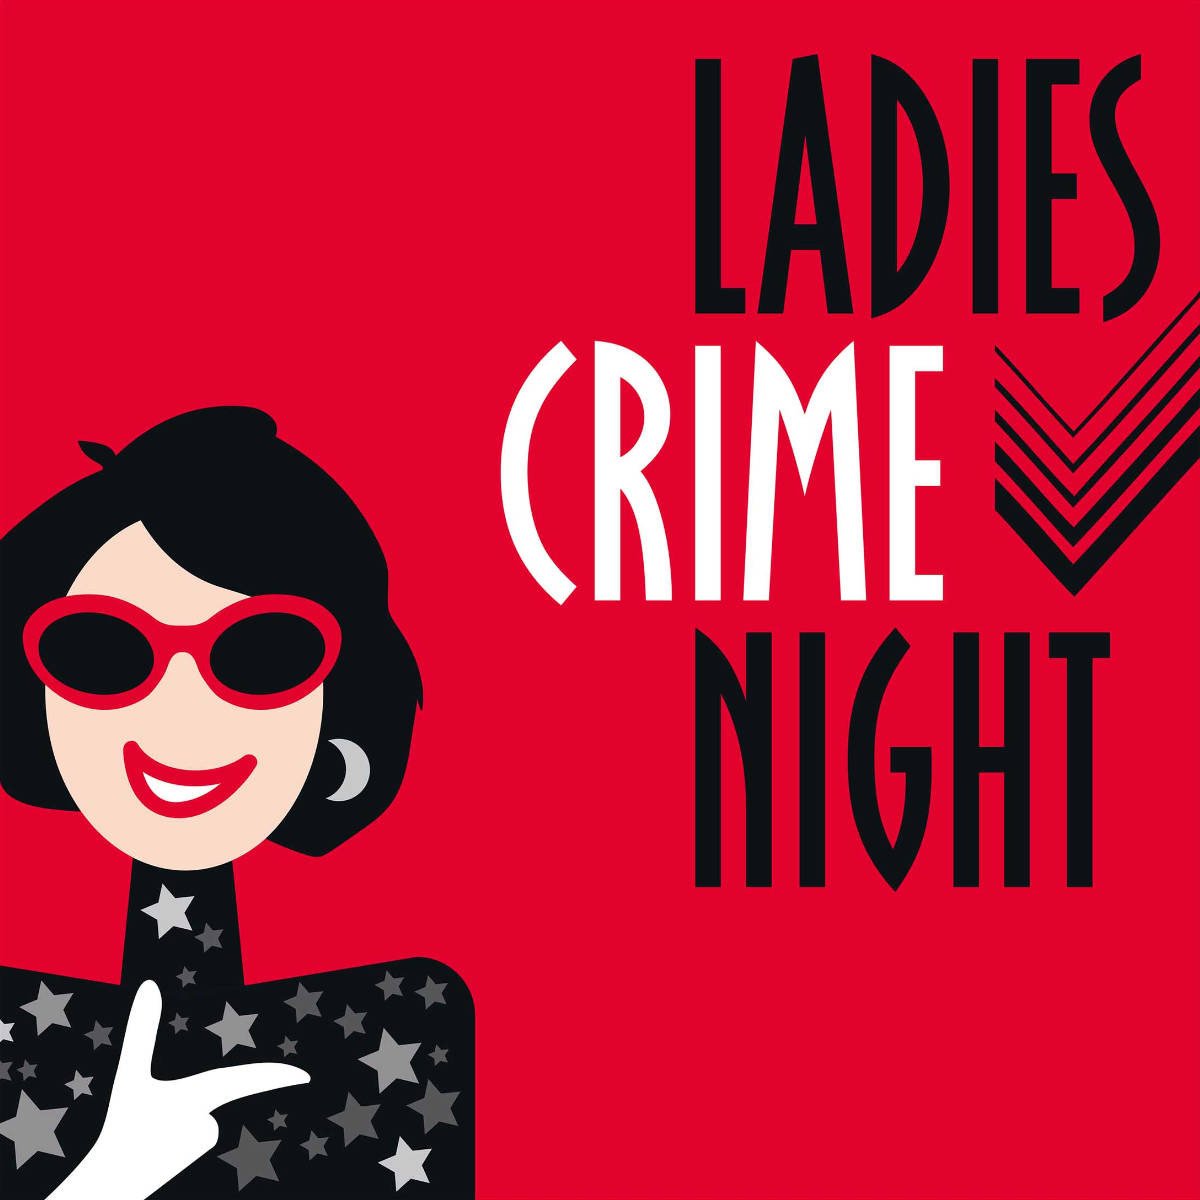 Bild von der Veranstaltung Die Ladies Crime Night in Güglingen